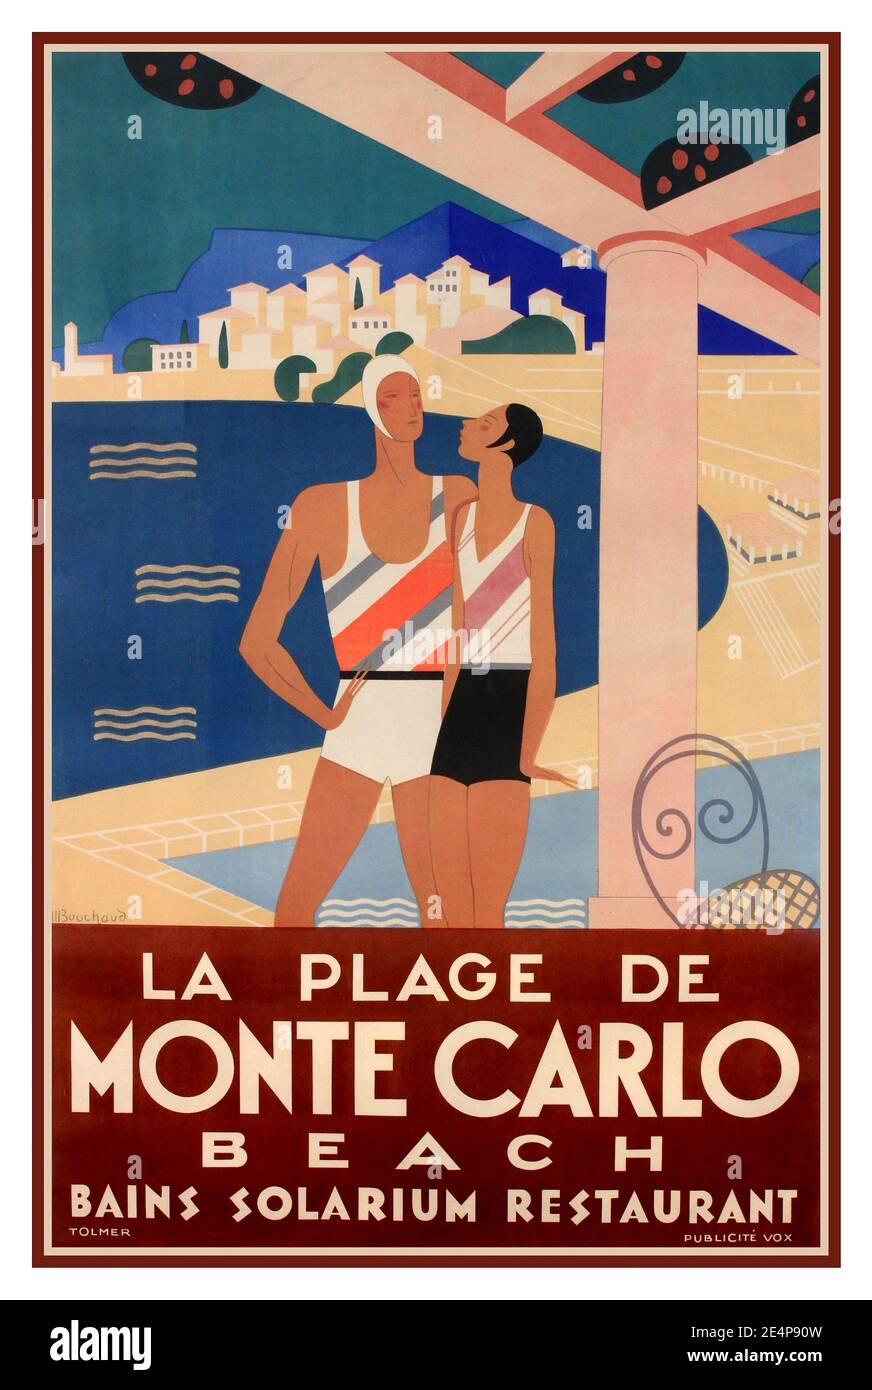 Cartel de viaje Vintage de la década de 1930 de Monte Carlo Michel Bouchaud (1902-1965) 'la Plage de Monte Carlo', BEACH BAINS SOLARIUM RESTAURANTE póster impreso por Tolmer Publicite Vox 1930 Foto de stock